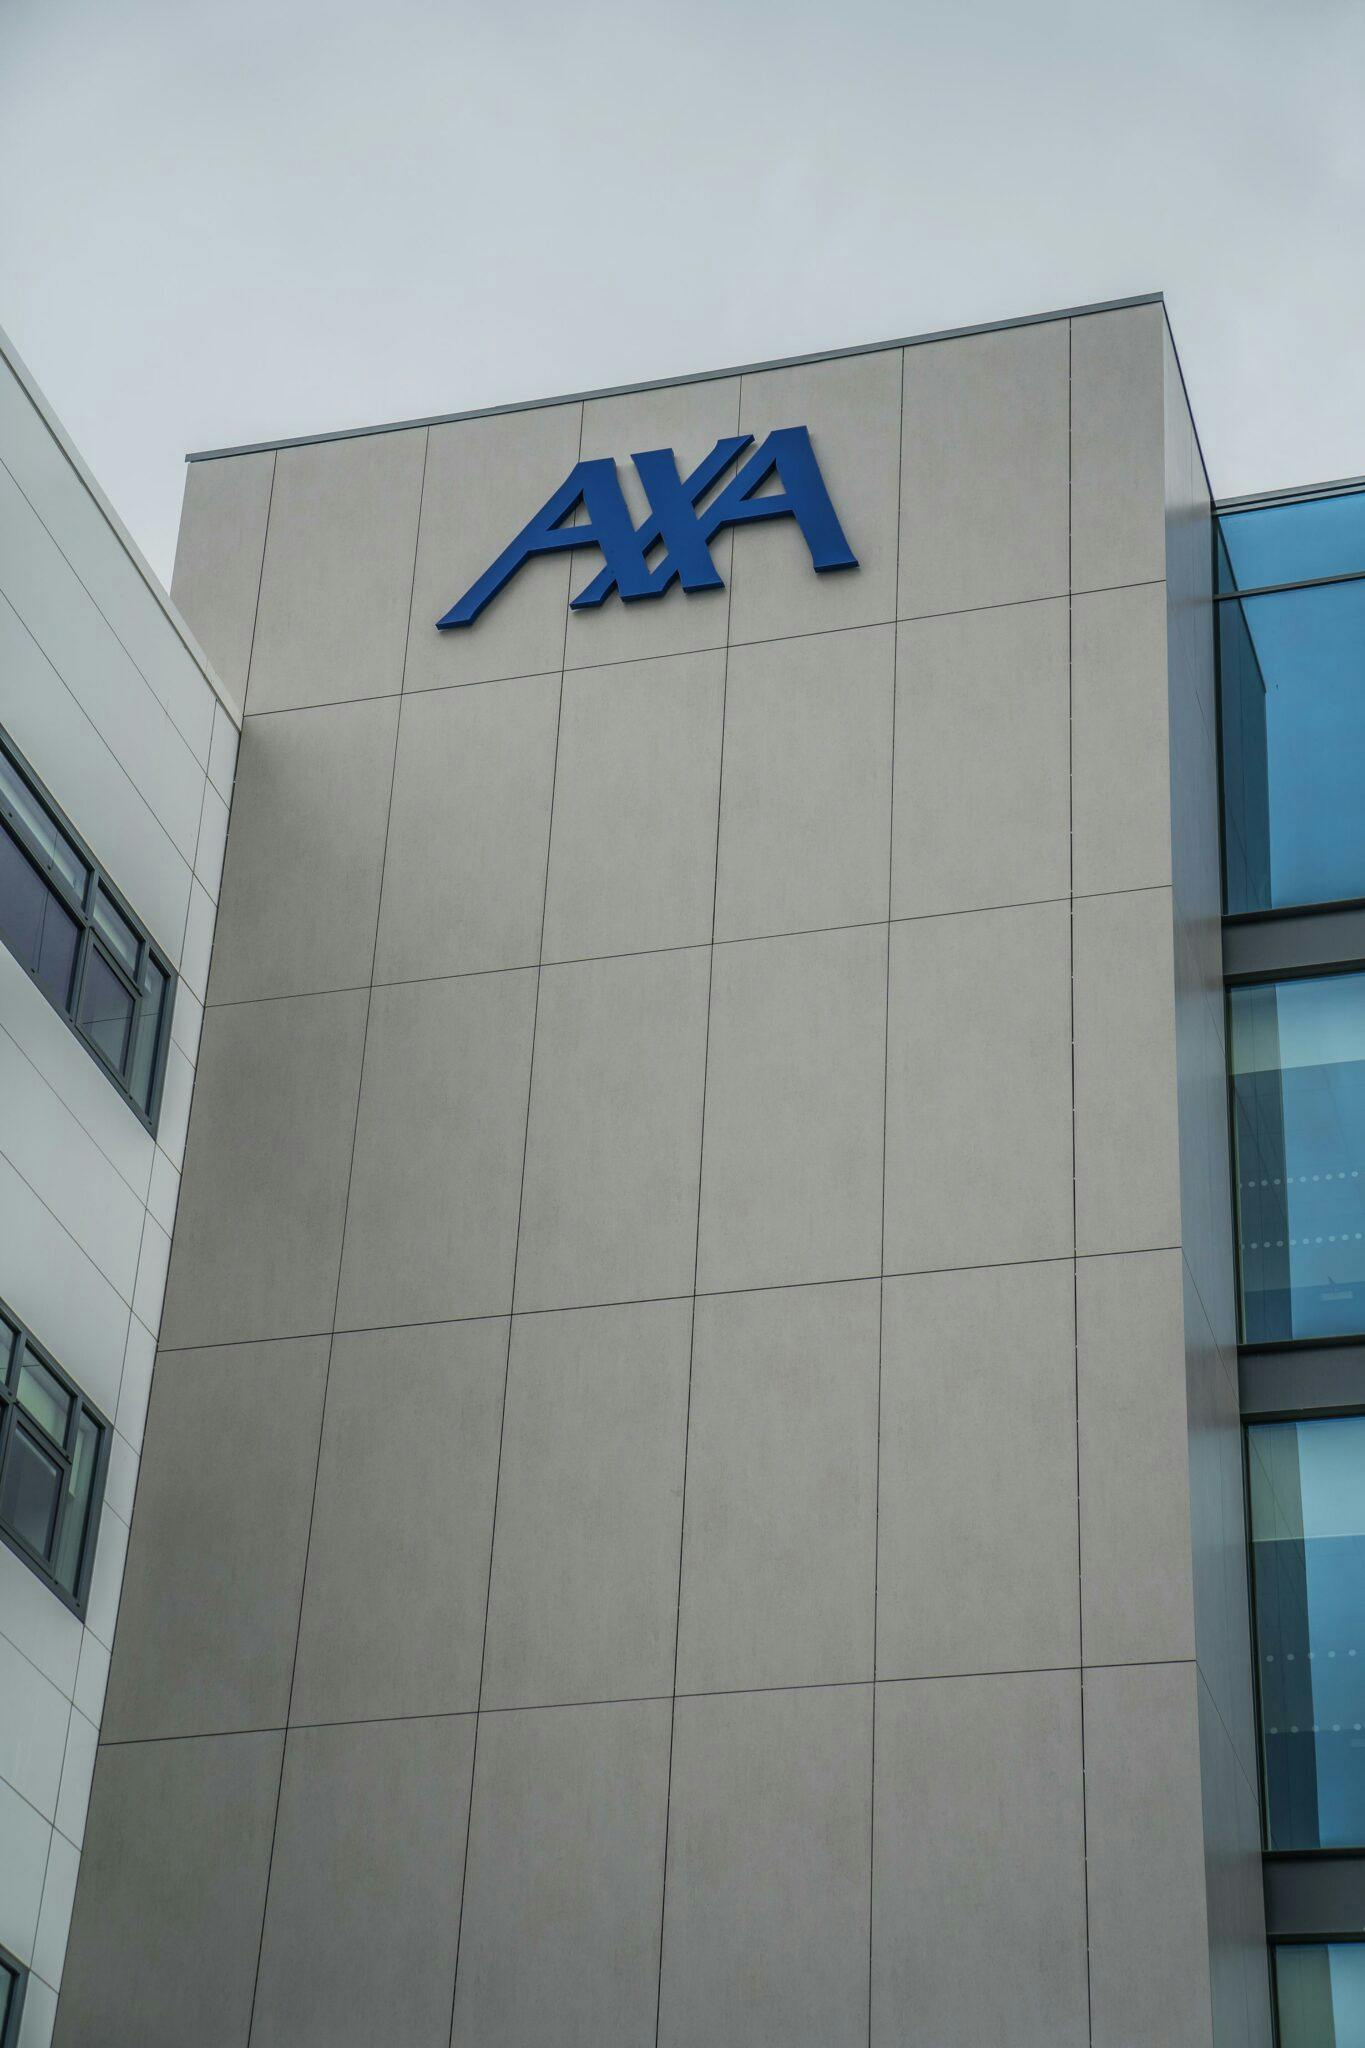 Numero immagine 94 della sezione corrente di AXA building di Cosentino Italia